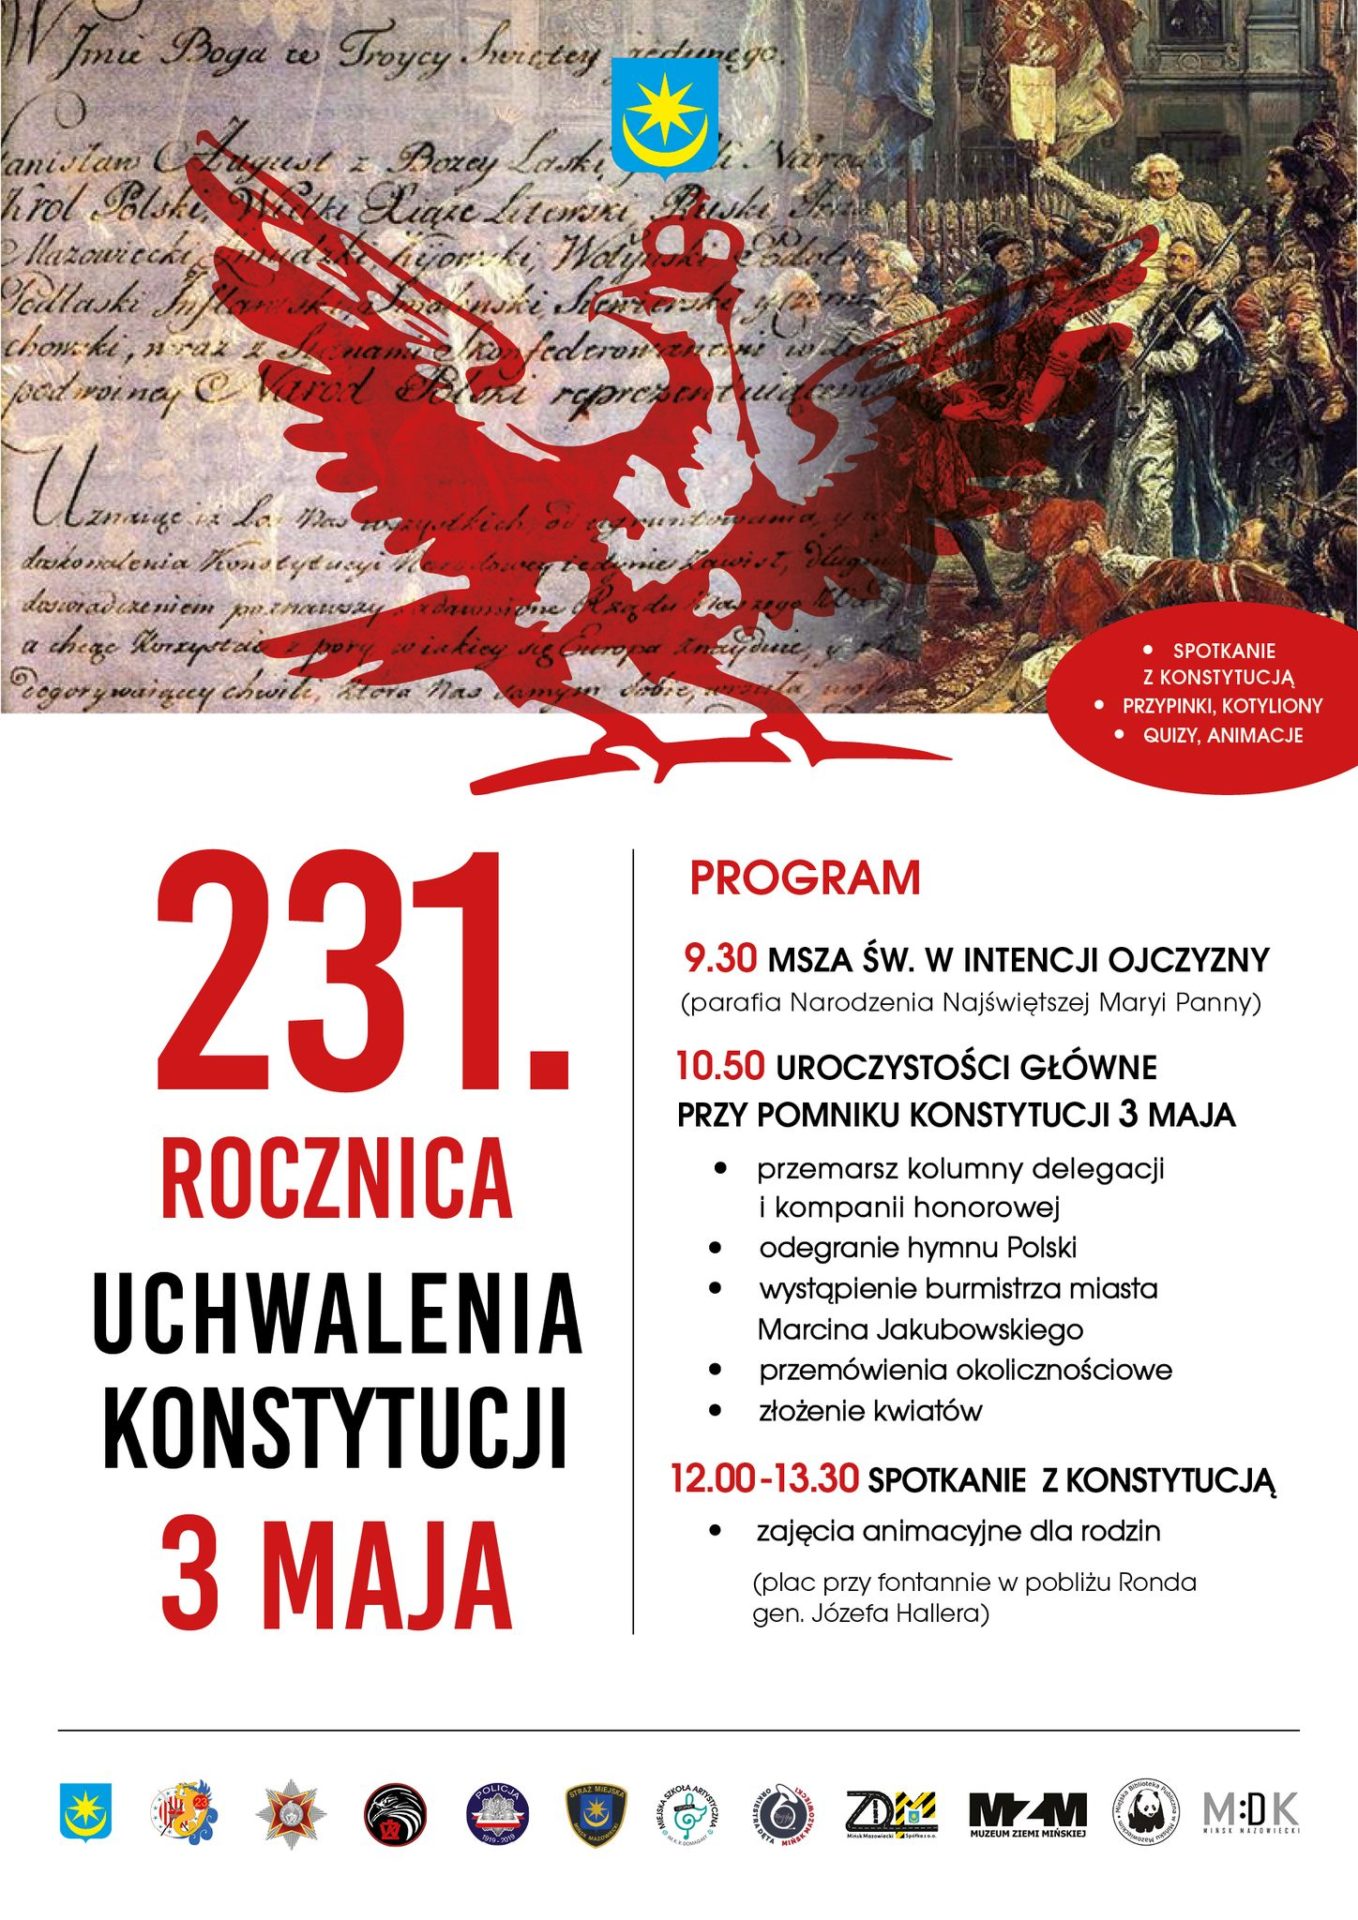 rękopis konstytucji grafik czerwony orzeł i obraz Jana Matejki